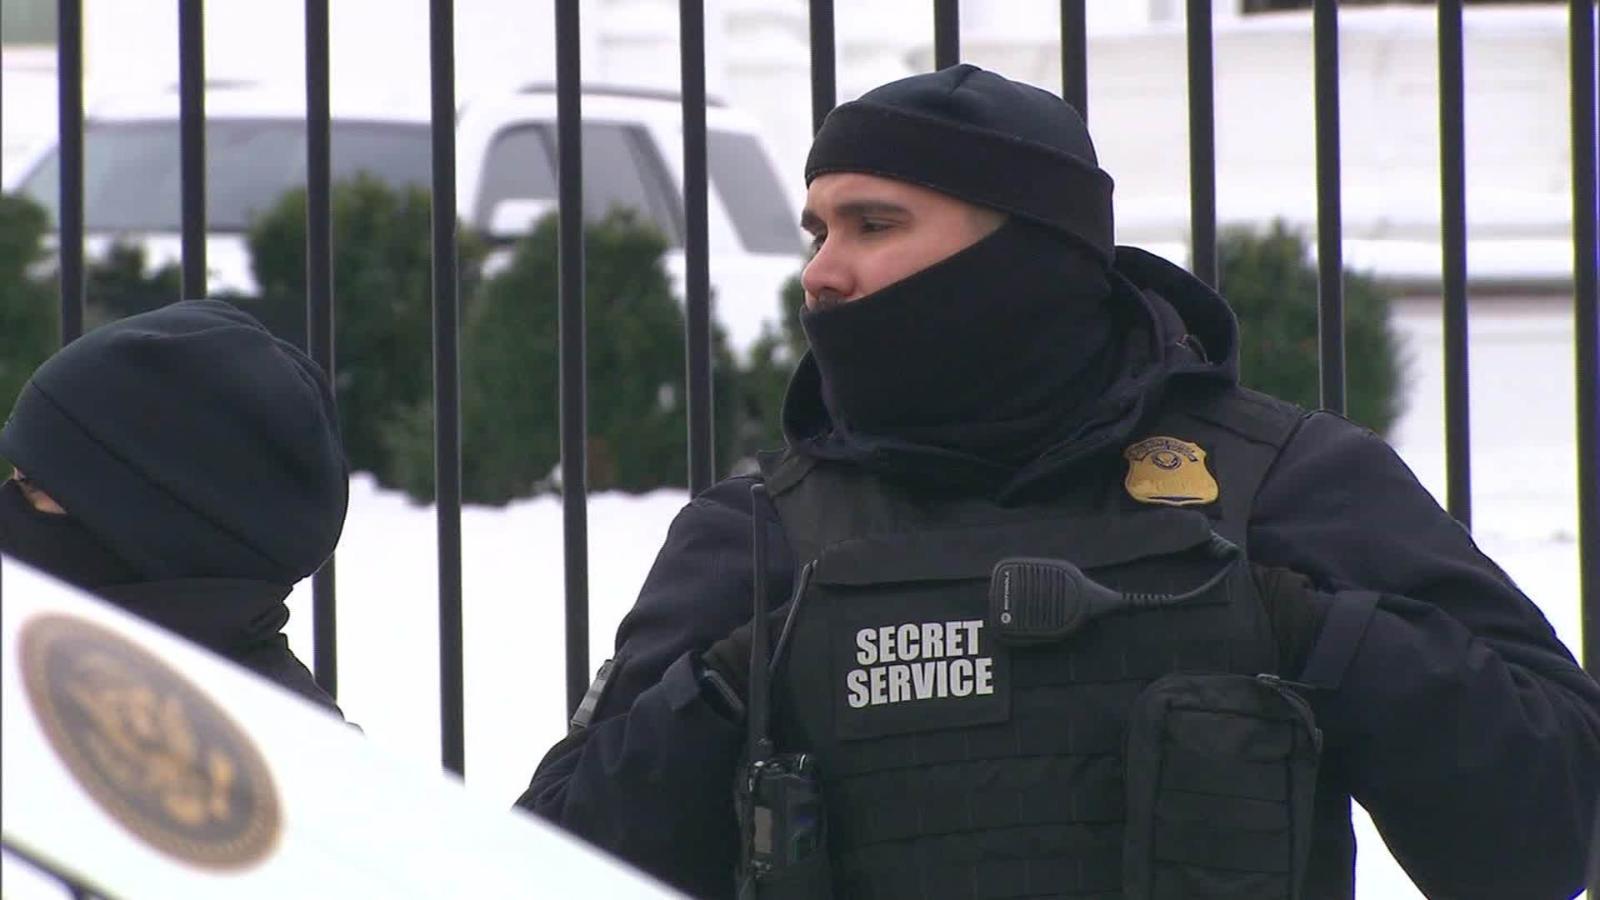 Secret Service agents hit